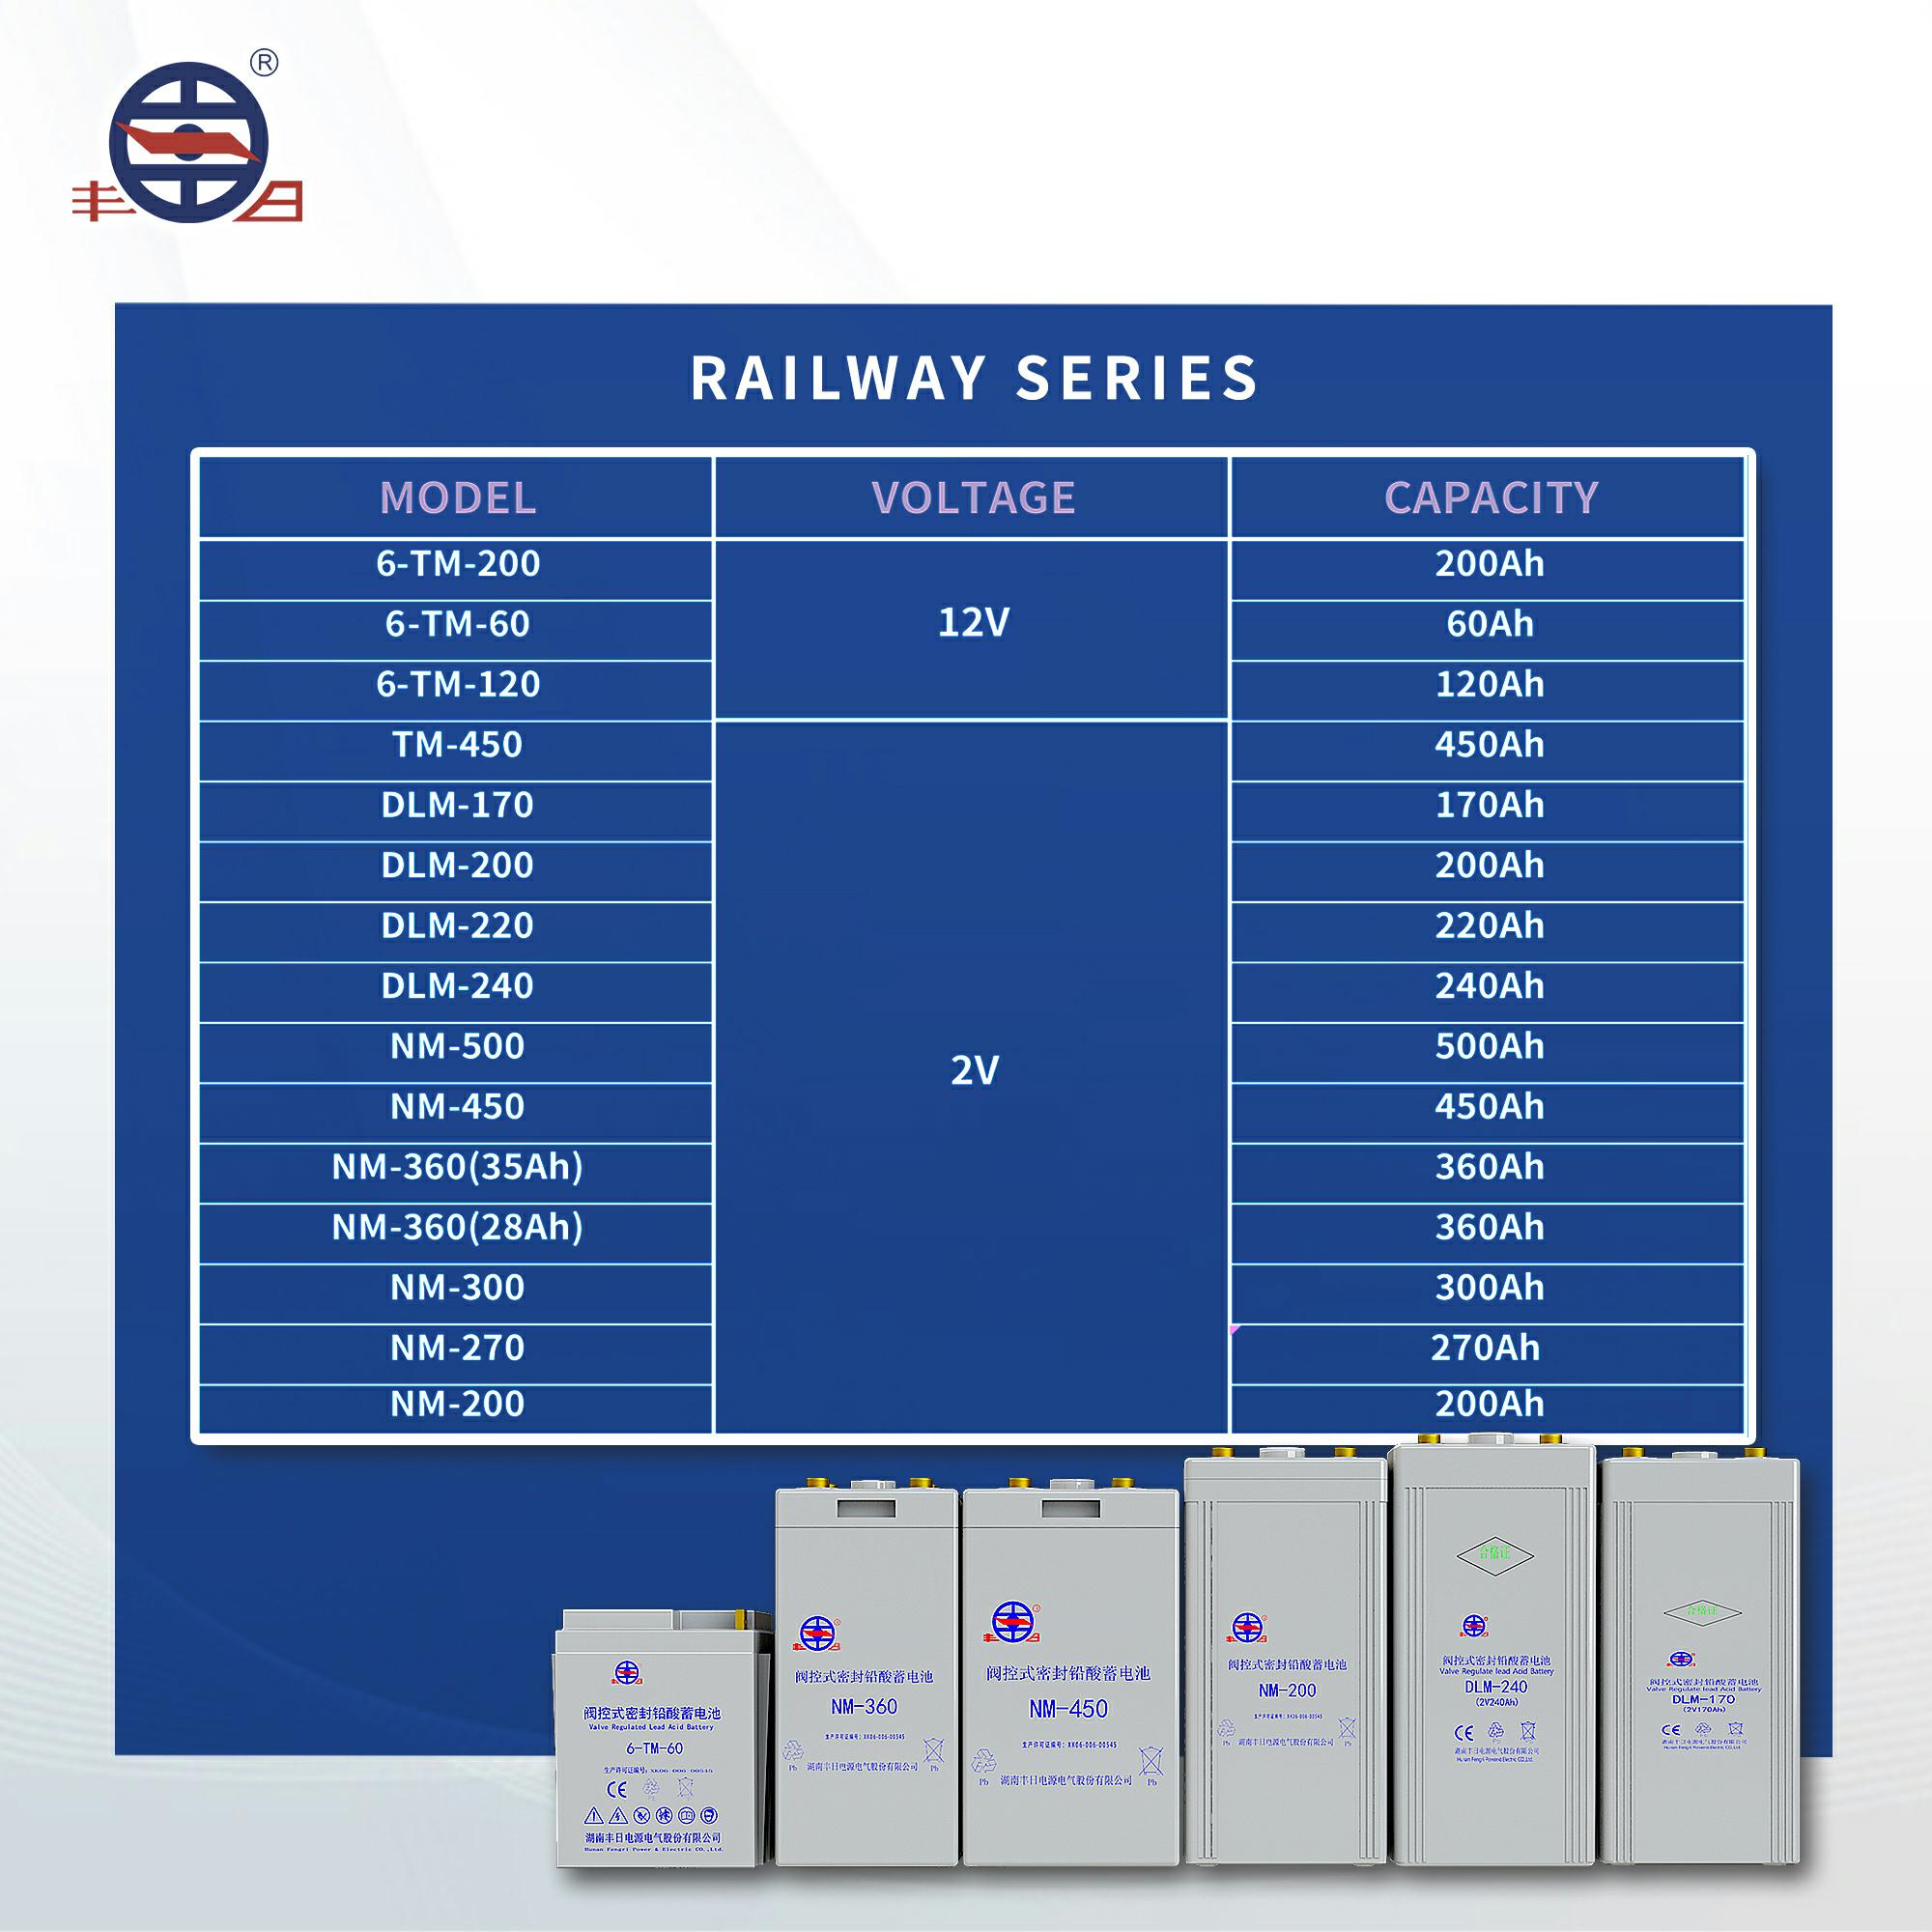 Baterai kereta api asam timbal TM-450 